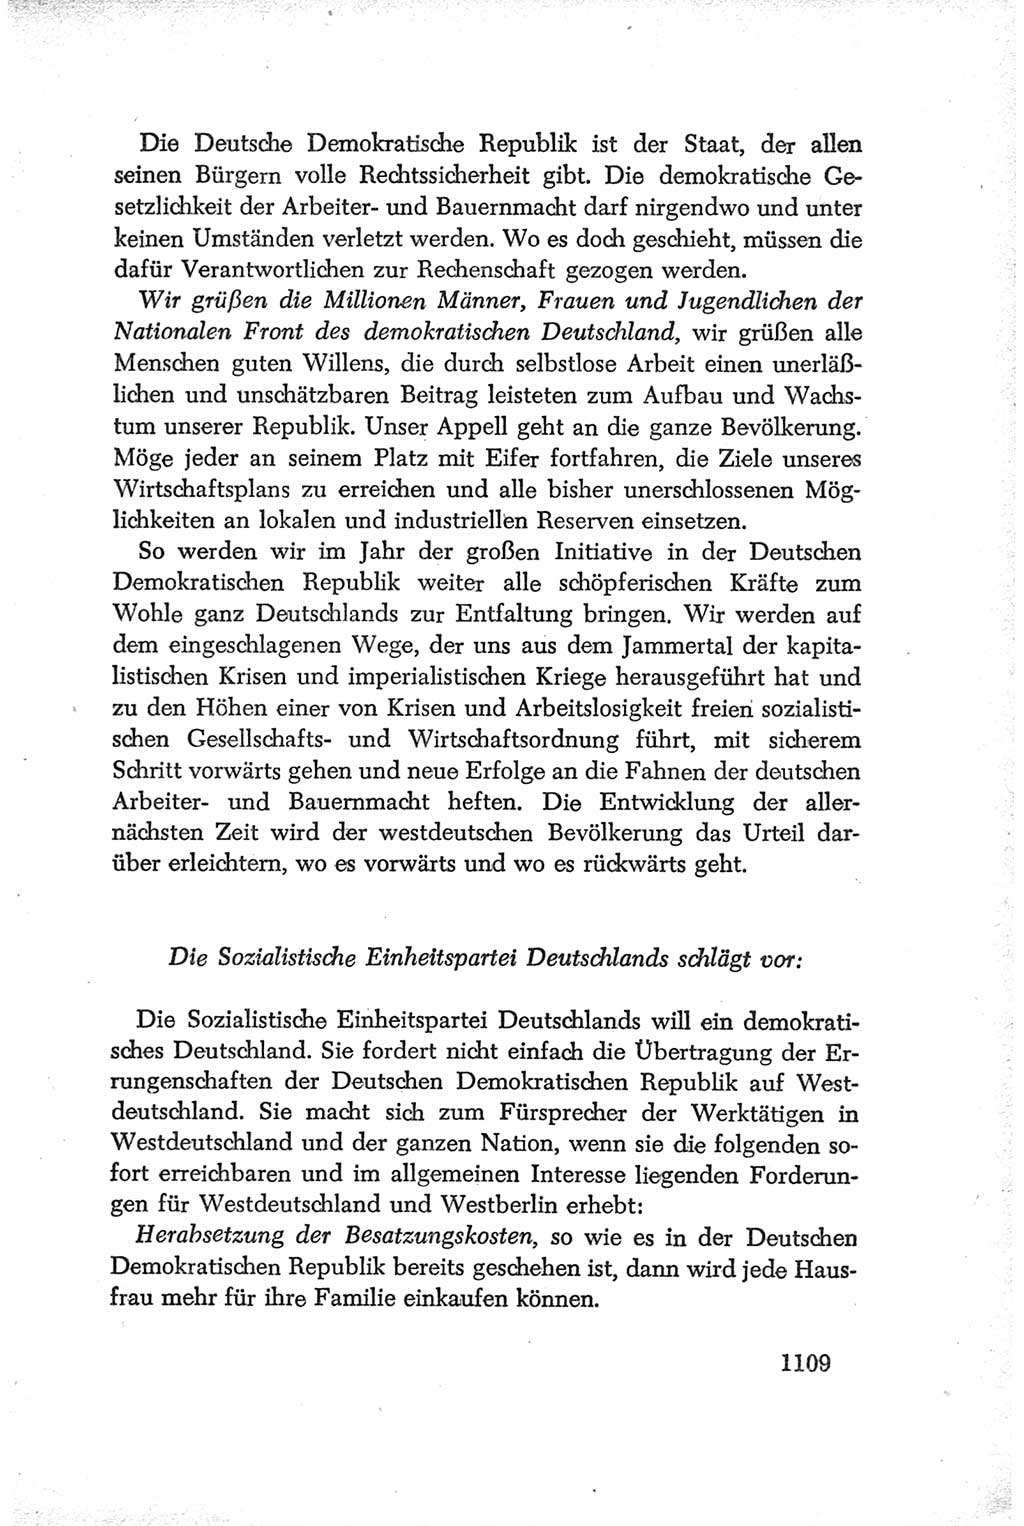 Protokoll der Verhandlungen des Ⅳ. Parteitages der Sozialistischen Einheitspartei Deutschlands (SED) [Deutsche Demokratische Republik (DDR)] 1954, Seite 1109